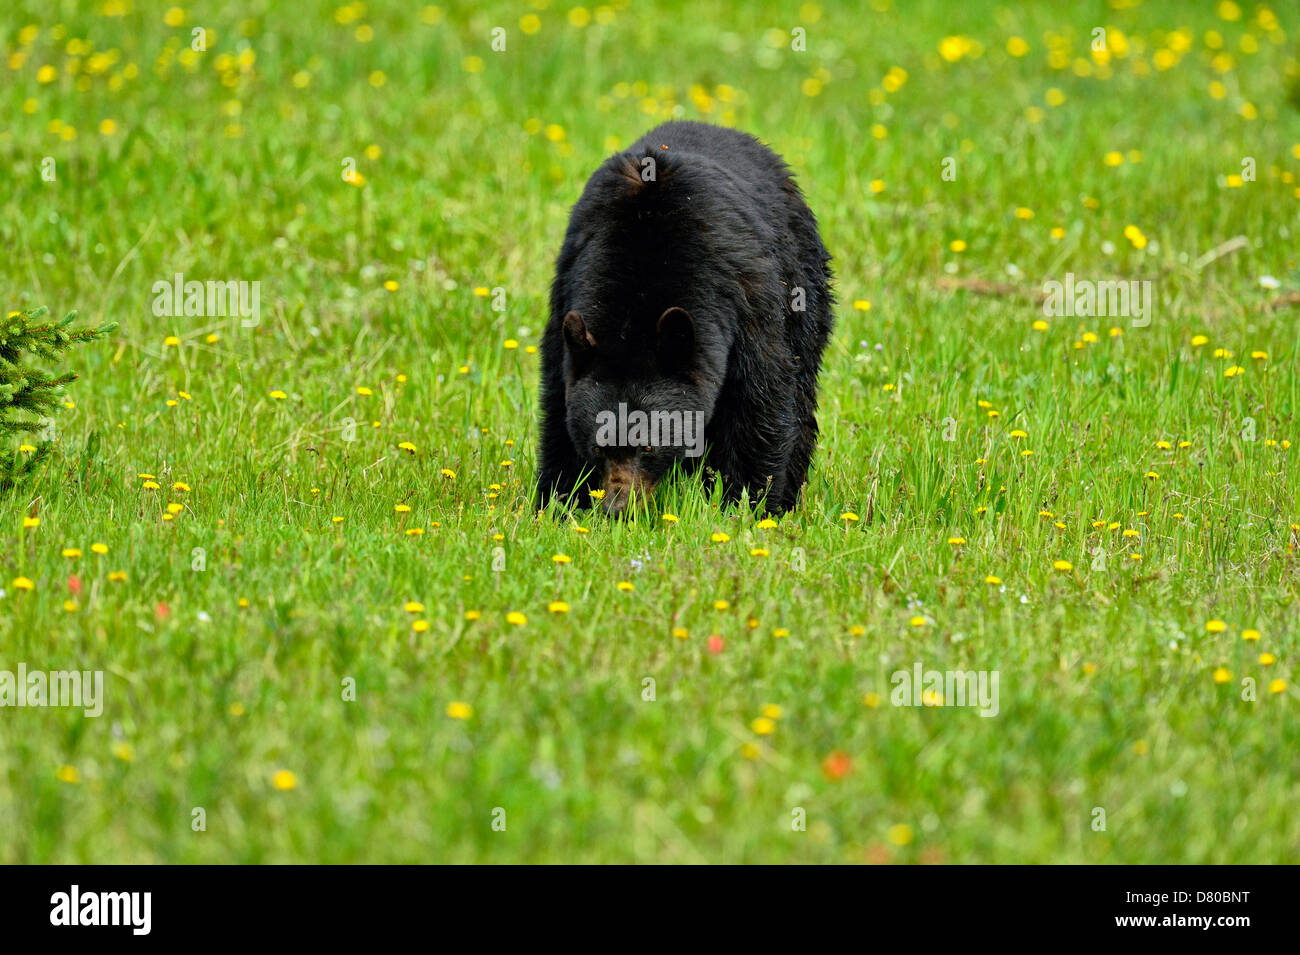 Ours noir, Ursus americanus, manger des pissenlits dans une prairie de fleurs du parc national Banff Alberta Canada Banque D'Images